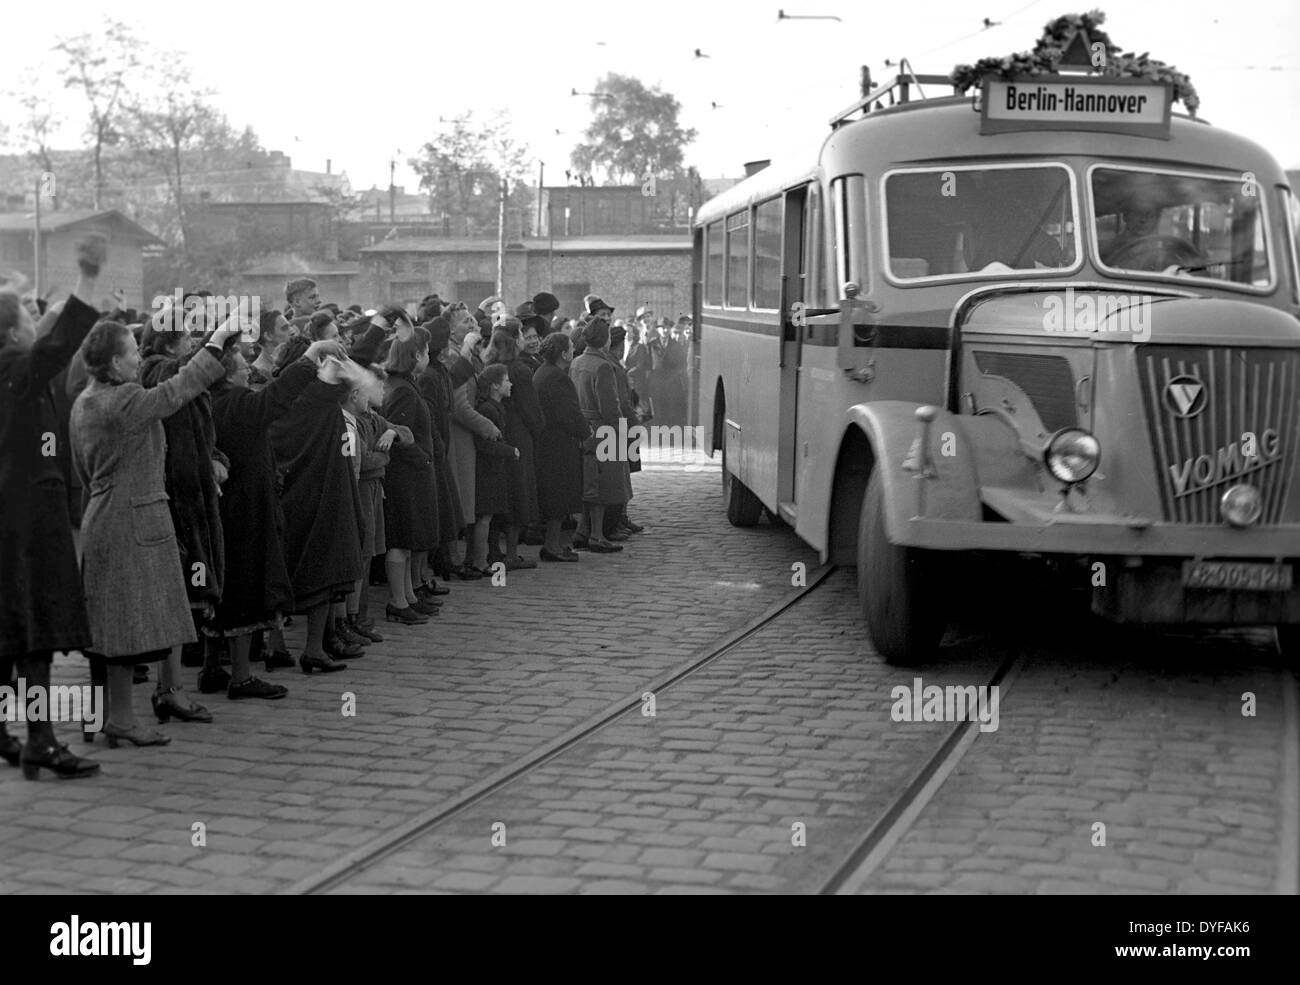 Berliner Welle als der erste interzone Bus nach Ende der Berlin-Blockade am 12. Mai 1949 auf der interzone Autobahn nach Hannover in Berlin, Deutschland, 12. Mai 1949 fährt. Foto: Zbarchiv - NO-Draht-SERVICE Stockfoto